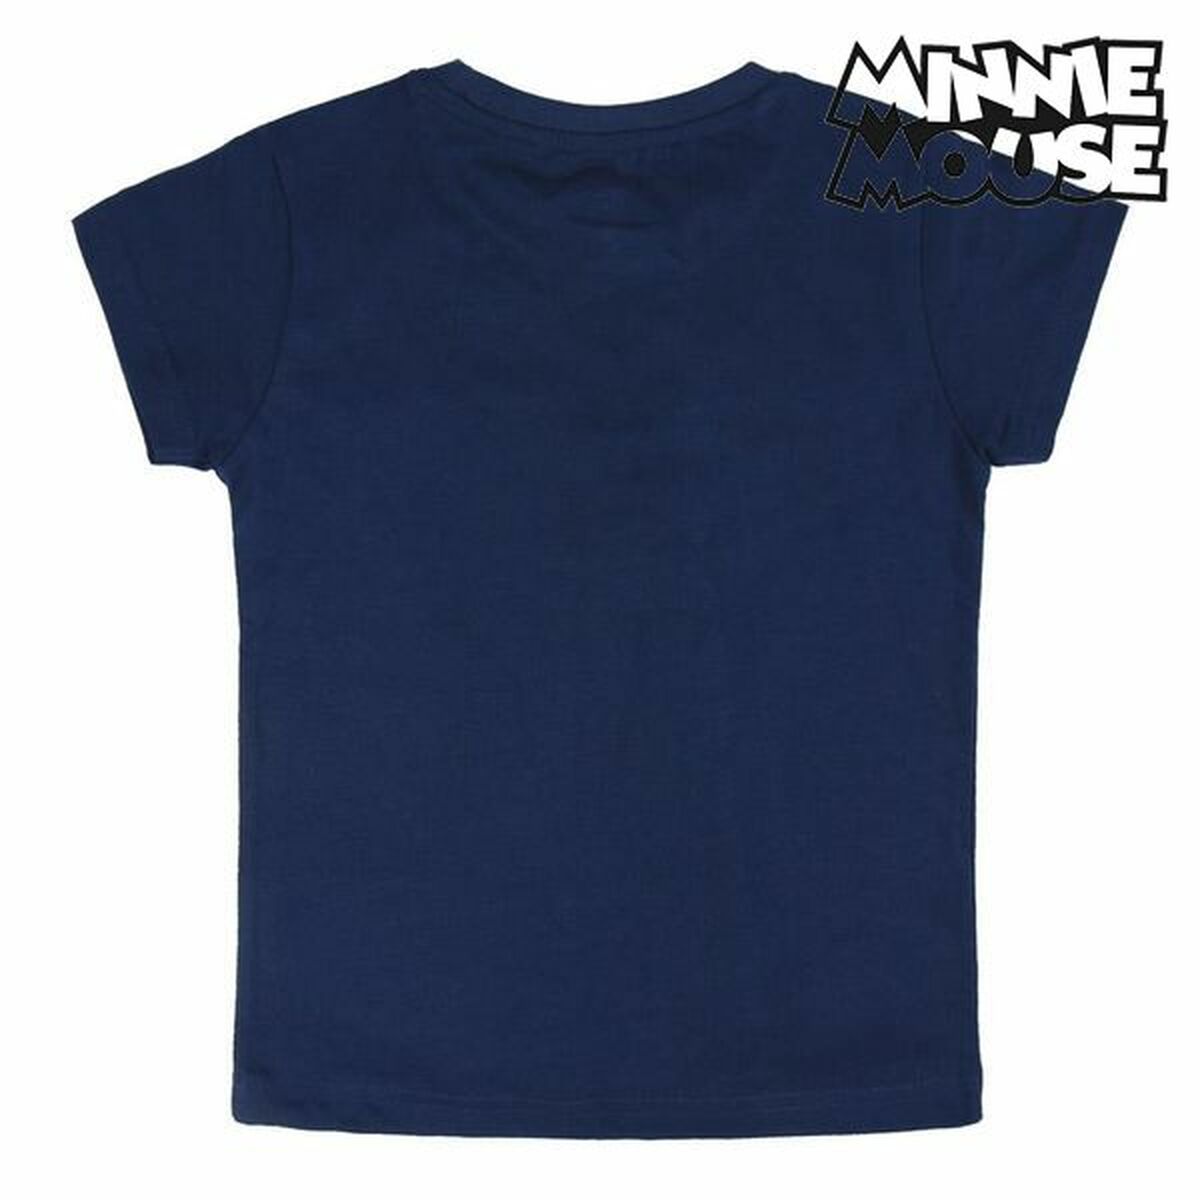 Pyjama D'Été Minnie Mouse 73728 Blue marine